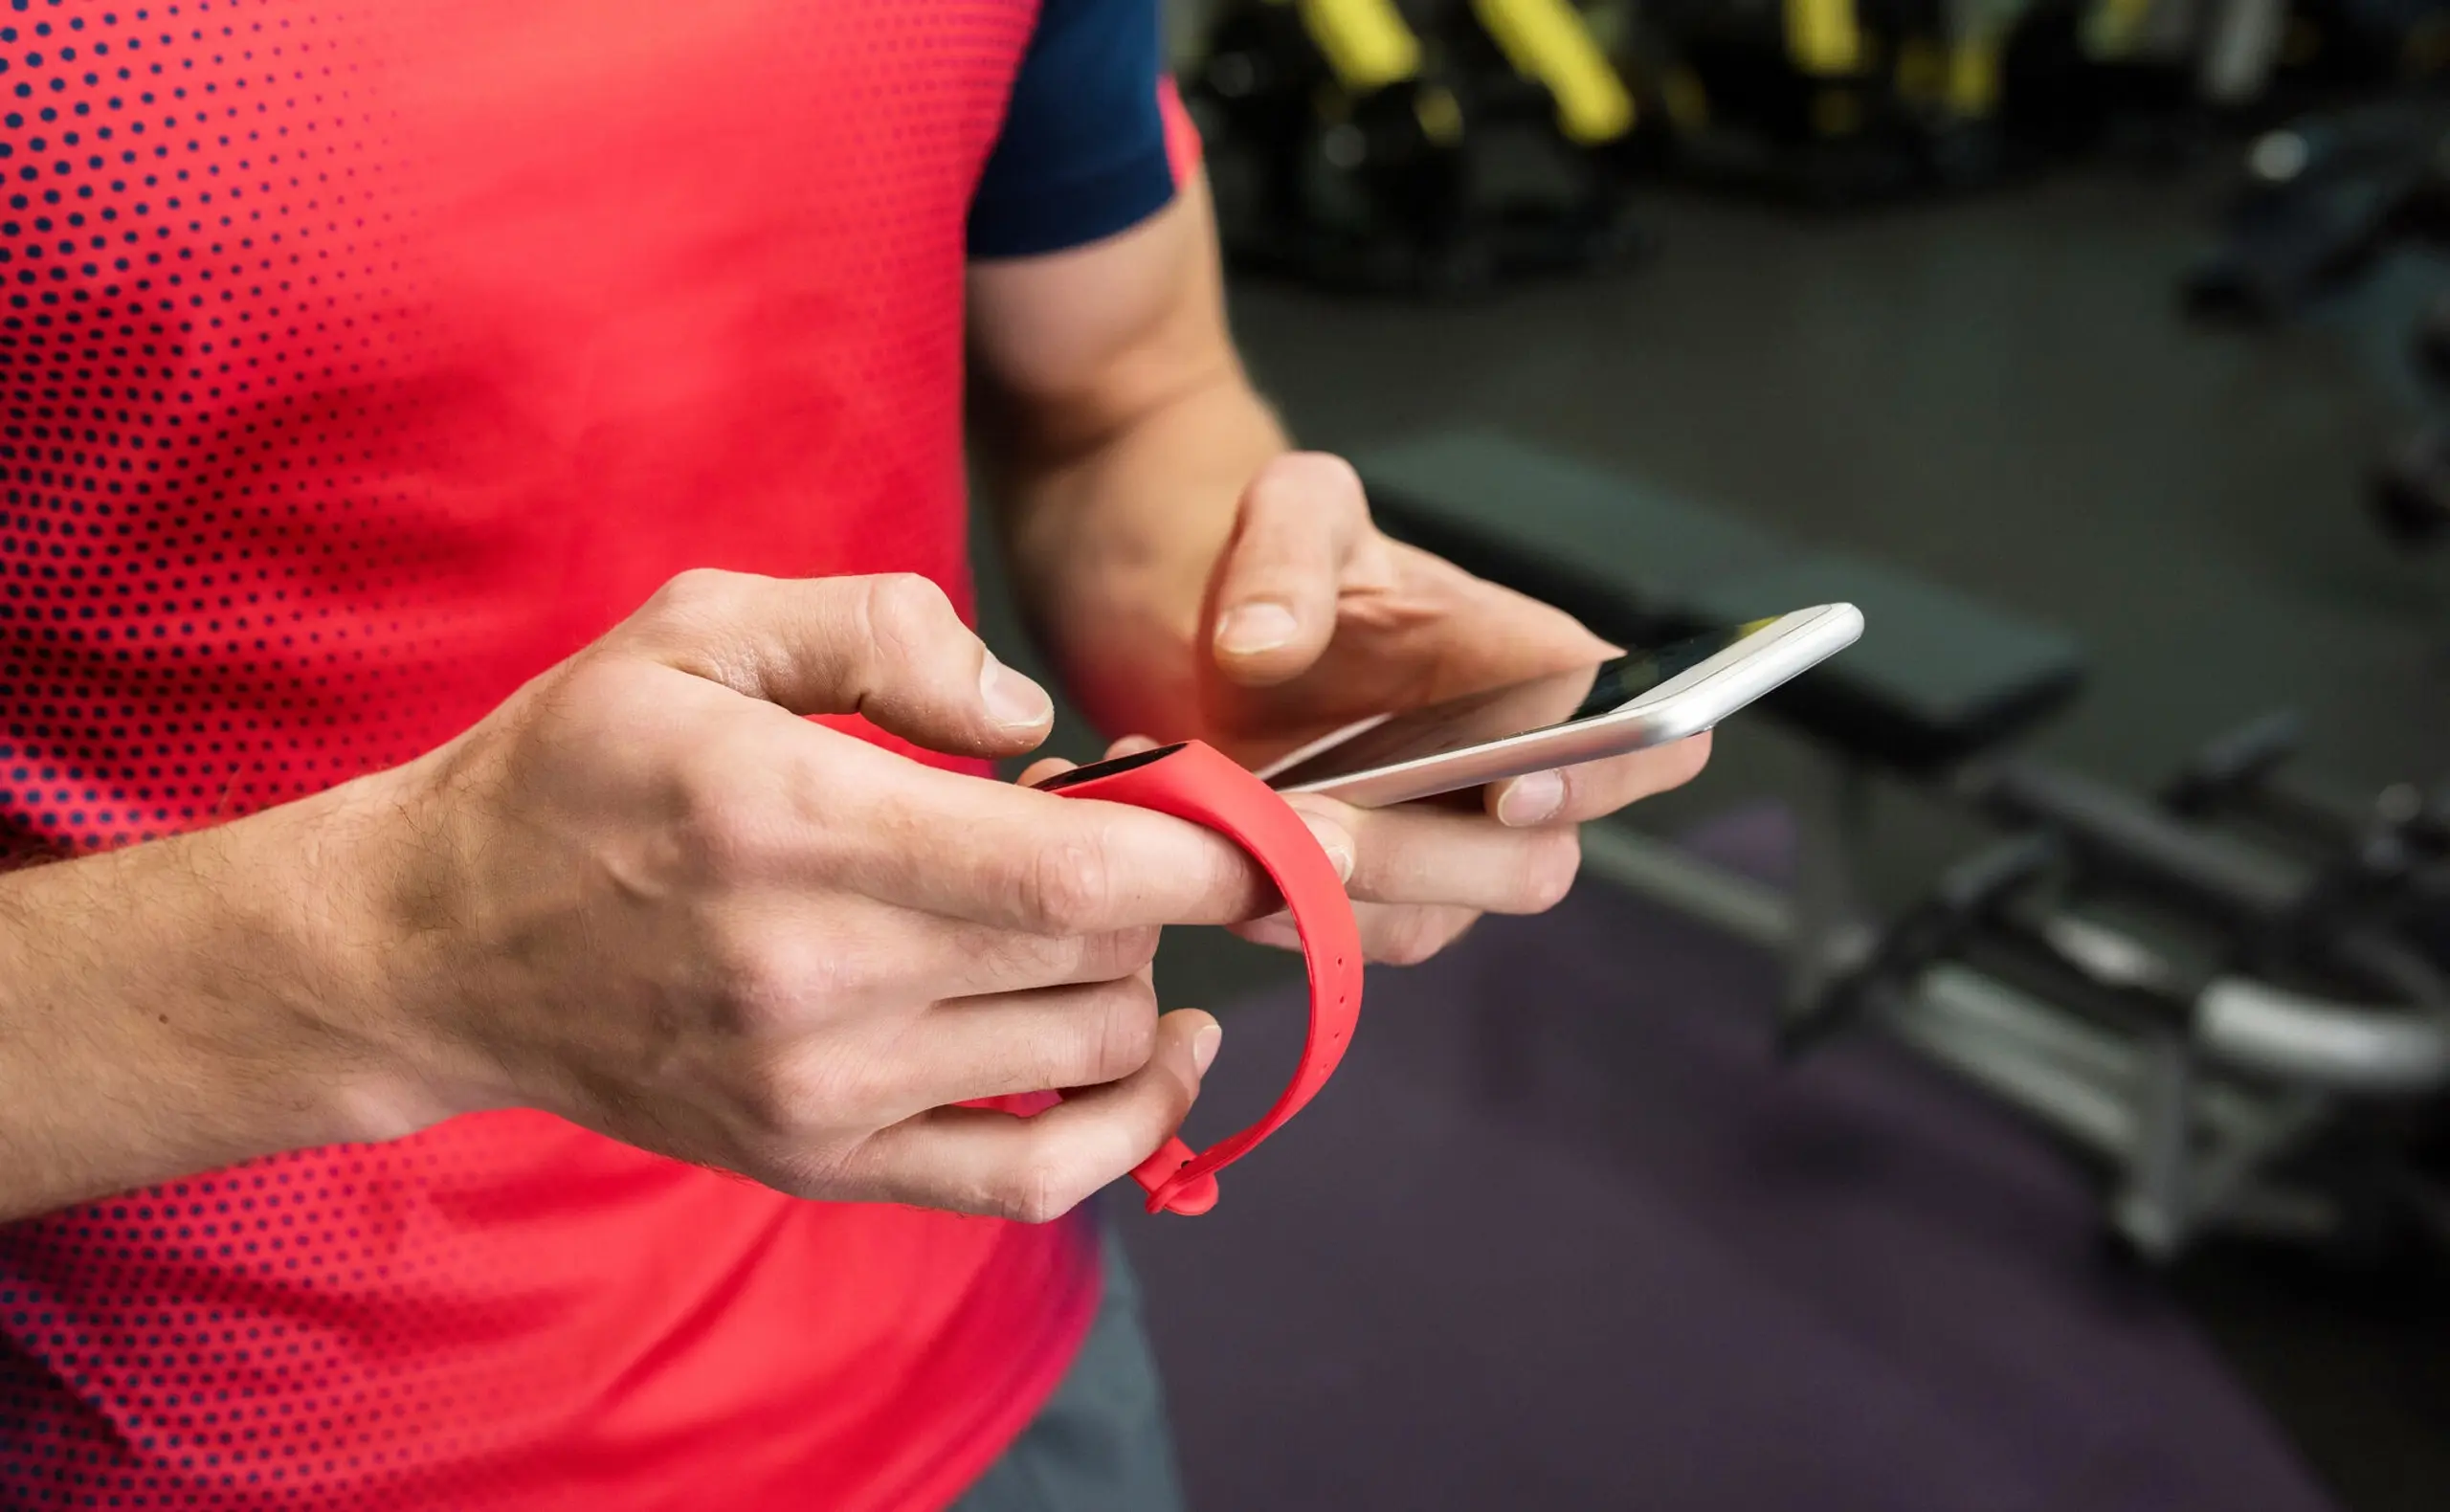 Mit der Smartwatch als Fitness-Tracker am Handgelenk die aktuellen Gesundheits- und Leistungsdaten immmer im Blick.